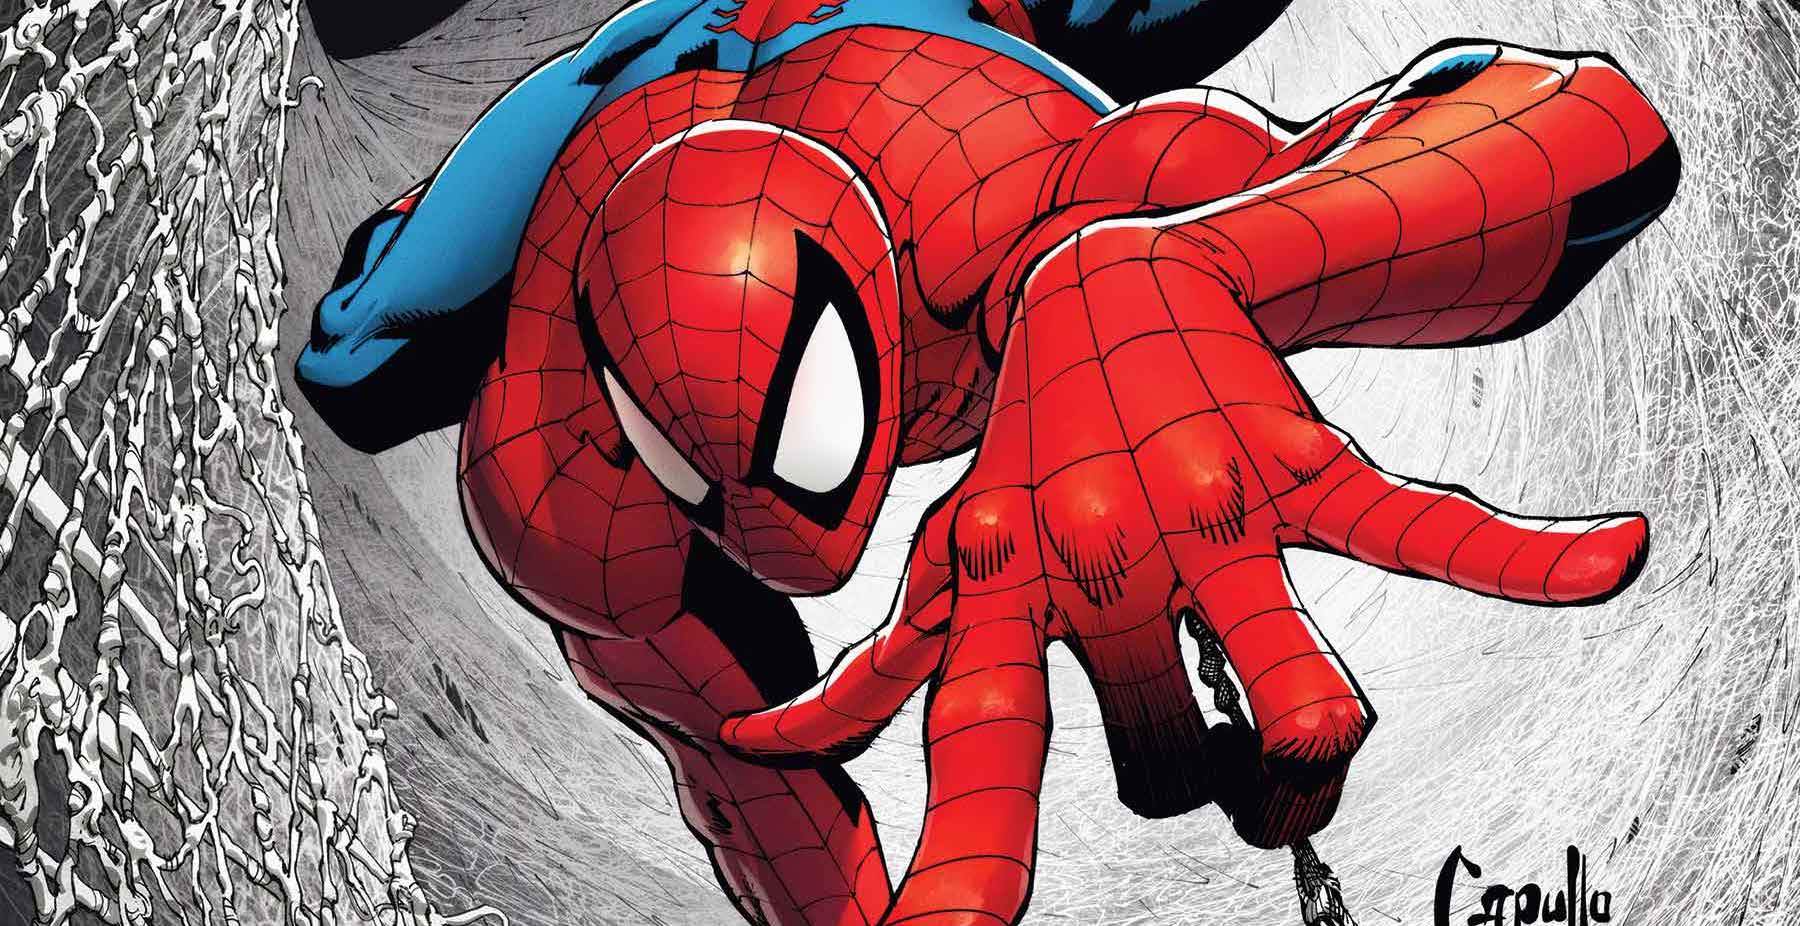 Marvel sheds new light on 'Web of Spider-Man' #1